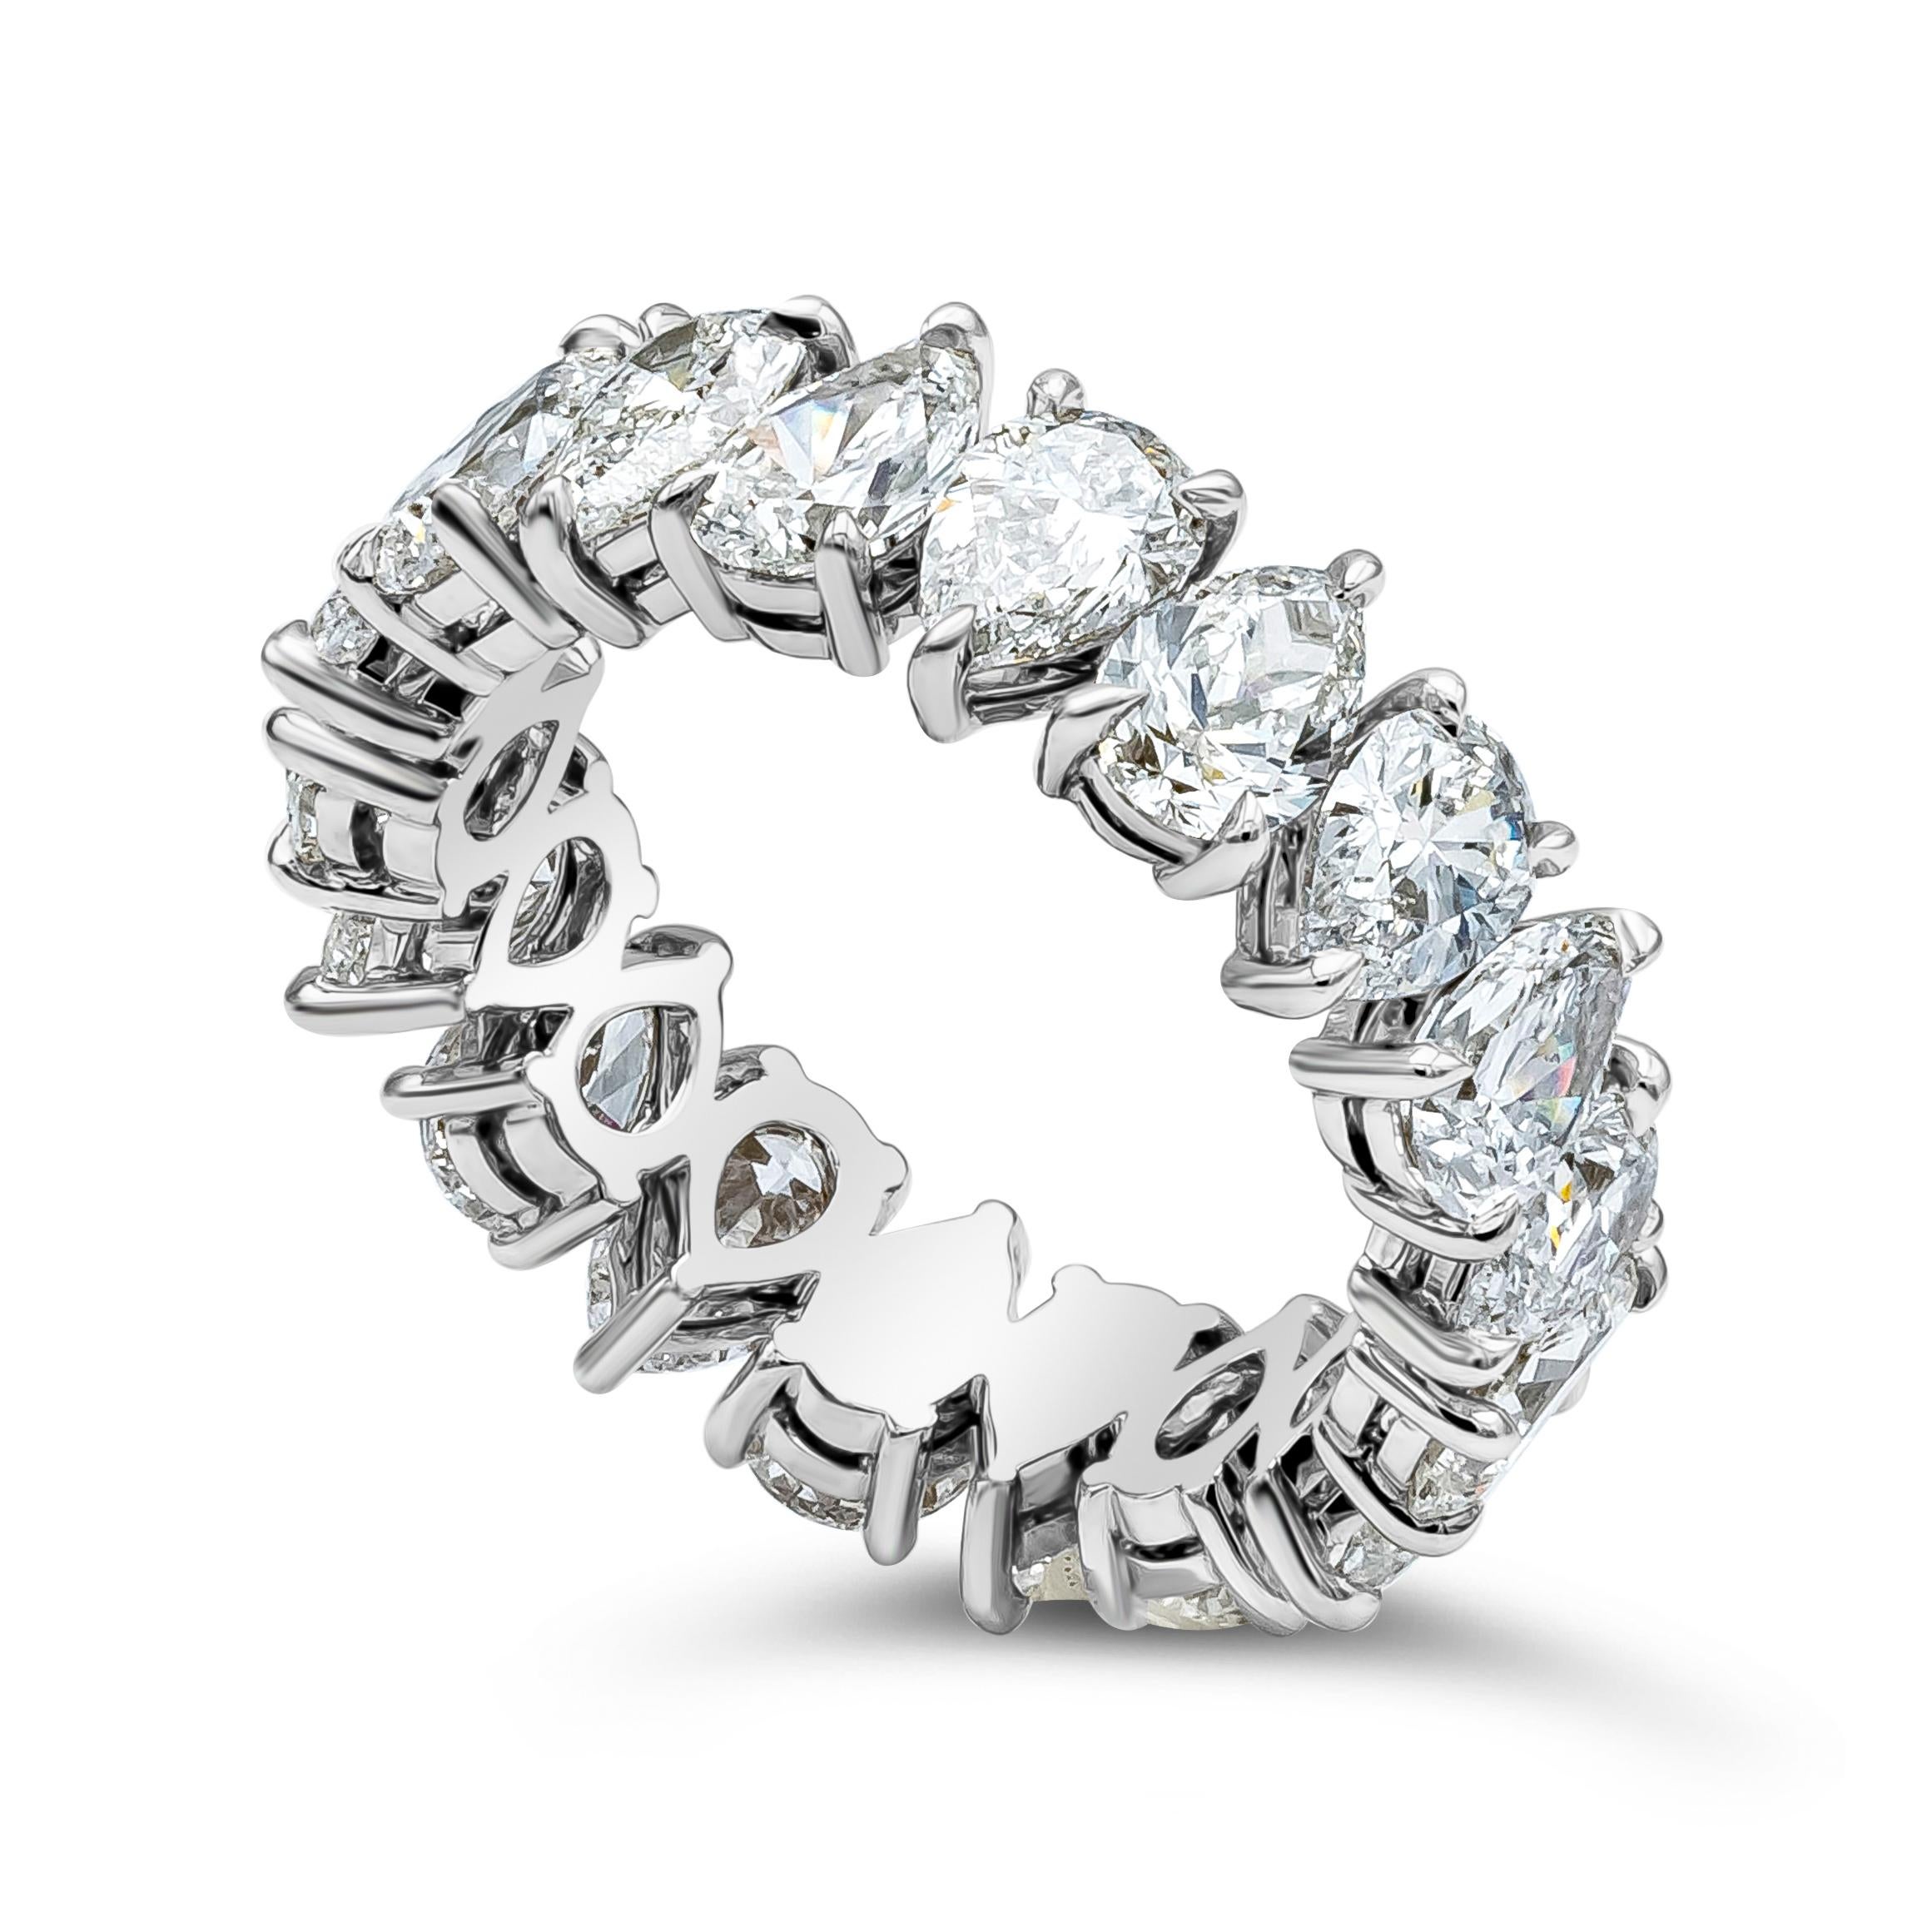 Ein brillanter und einzigartiger Ewigkeitsring mit 18 birnenförmigen Diamanten von insgesamt 5,52 Karat. E-F in der Farbe und VS-SI in der Klarheit. Hergestellt mit Platin. Größe 6 US

Stil in verschiedenen Preisklassen erhältlich. Die Preise